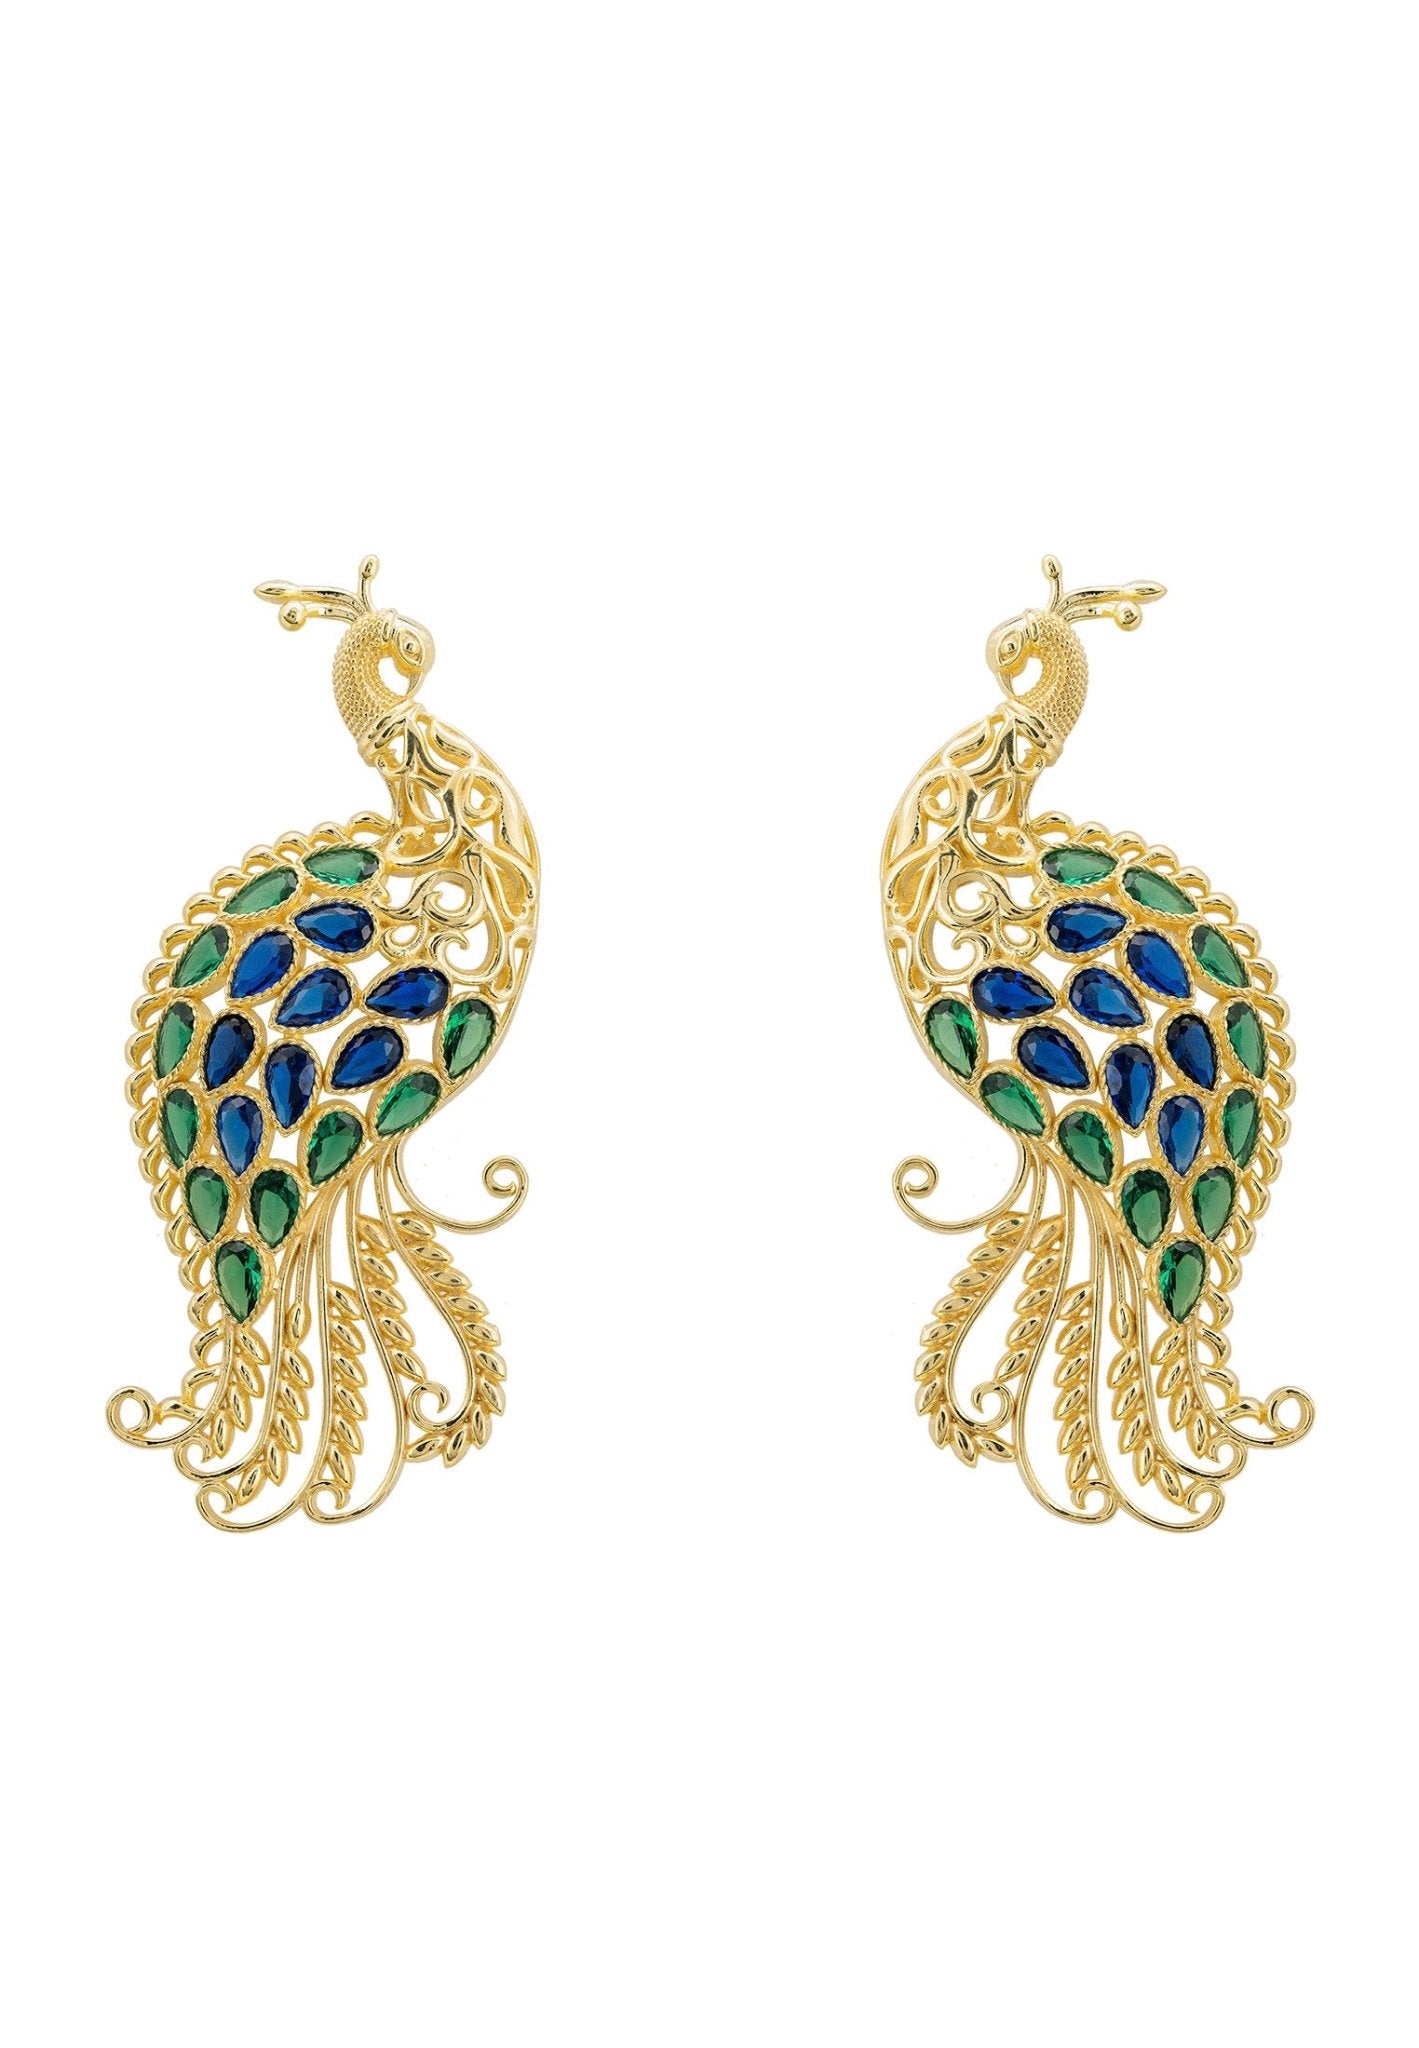 Peacock Train Earrings Gold Blue Green - LATELITA Earrings